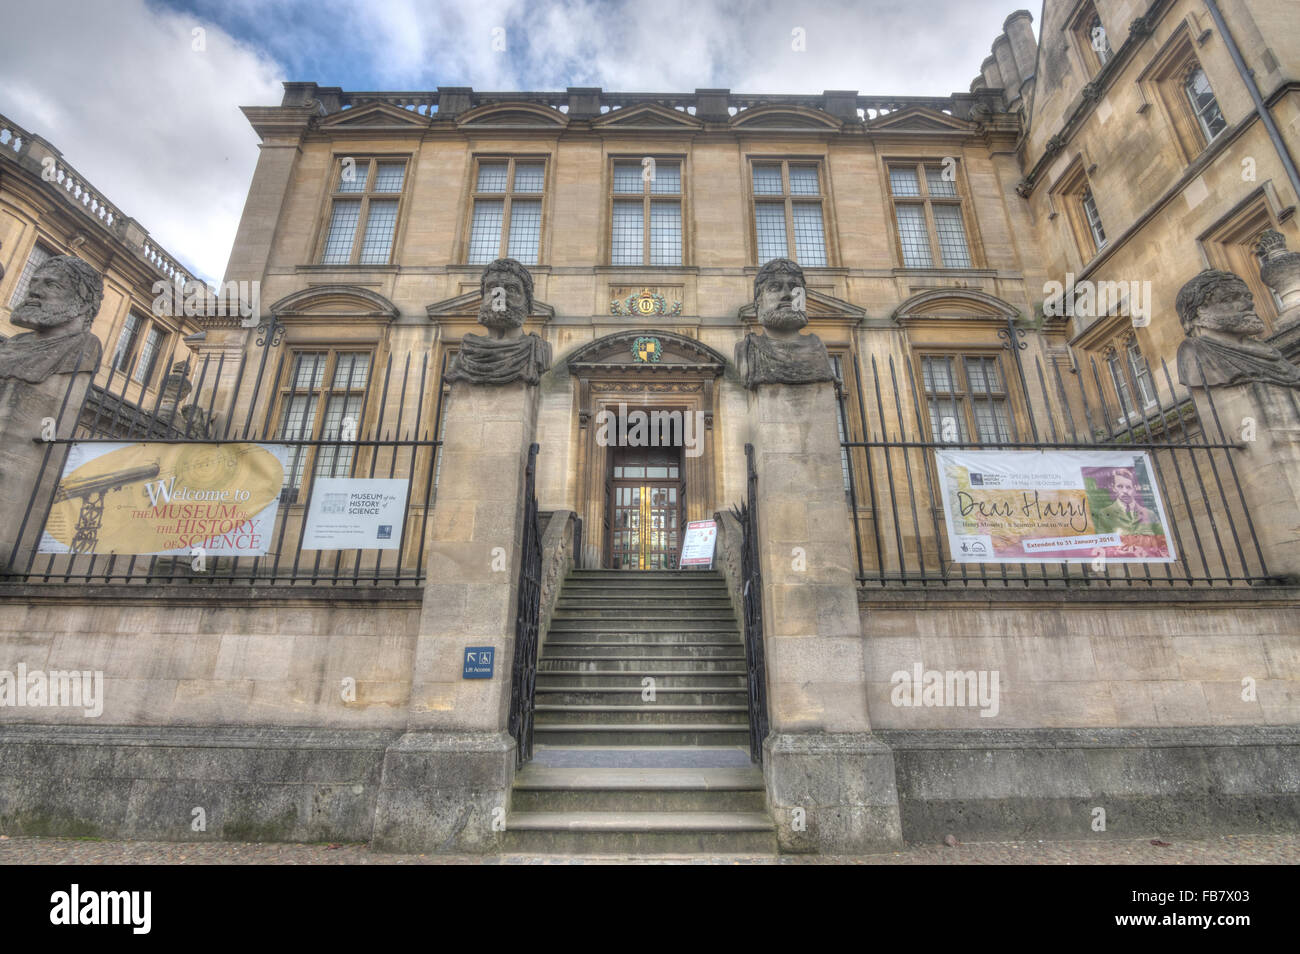 Museo de Historia de la ciencia, Oxford Foto de stock